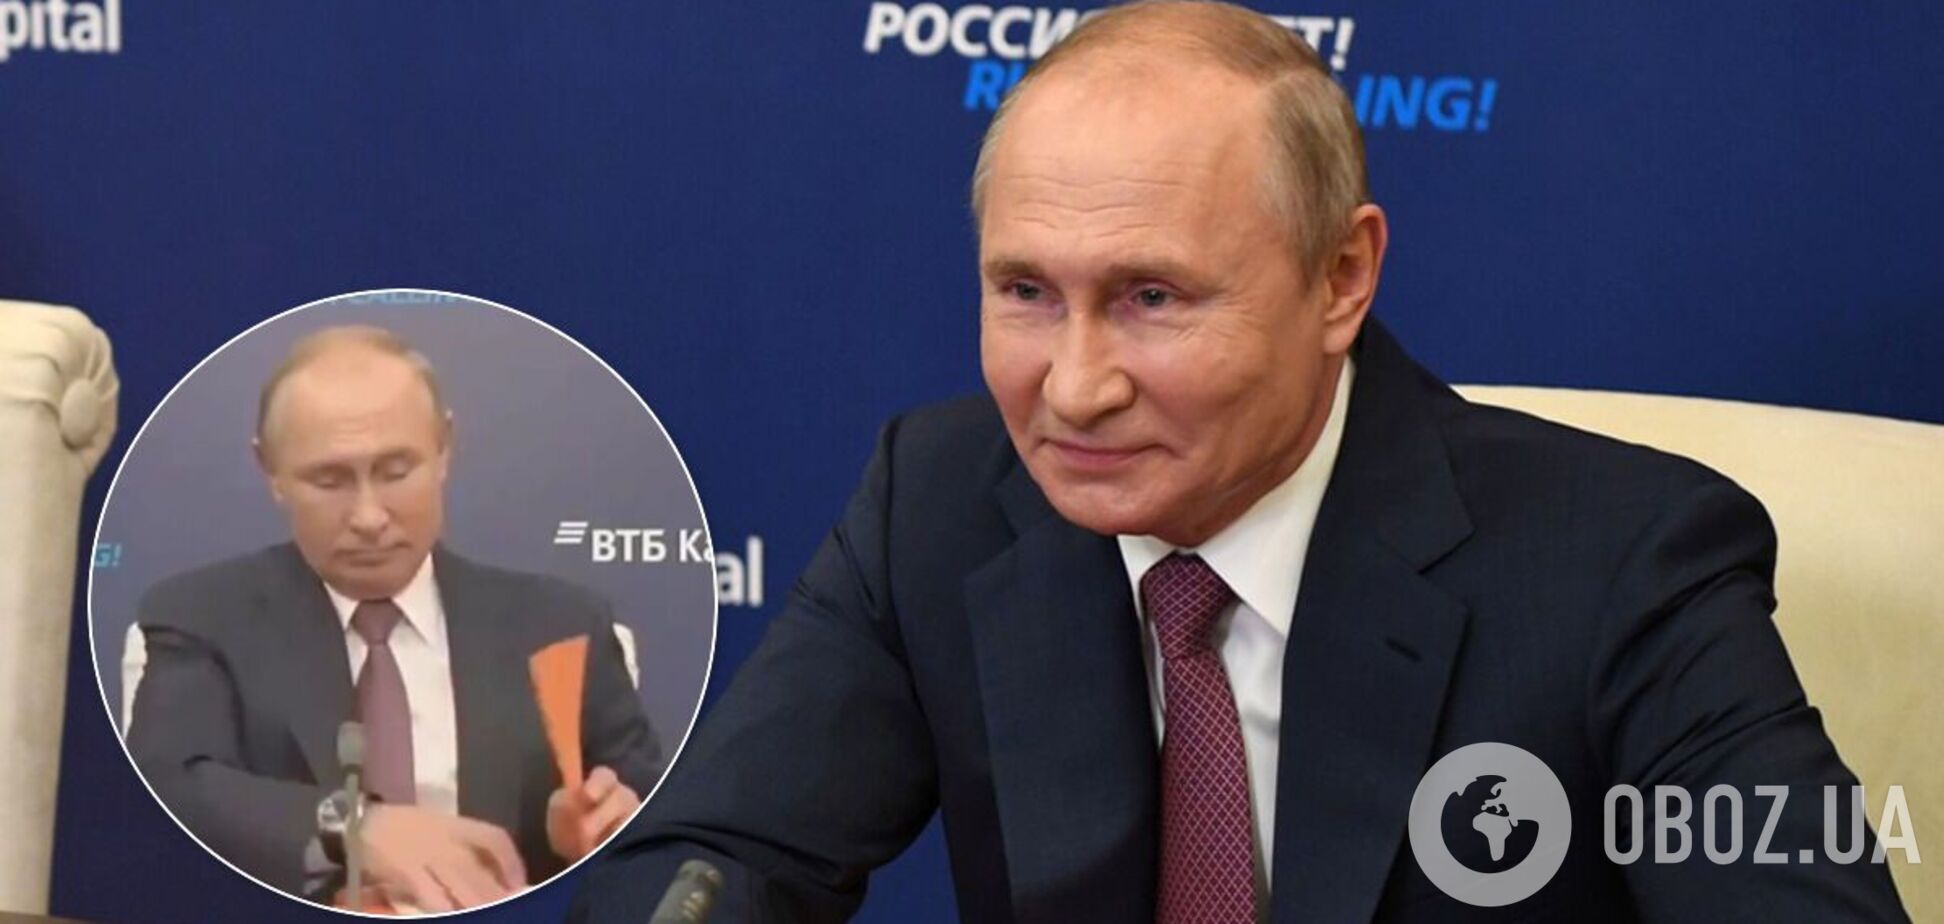 Путин удивил сеть нервным поведением: видео с бумагами стало вирусным